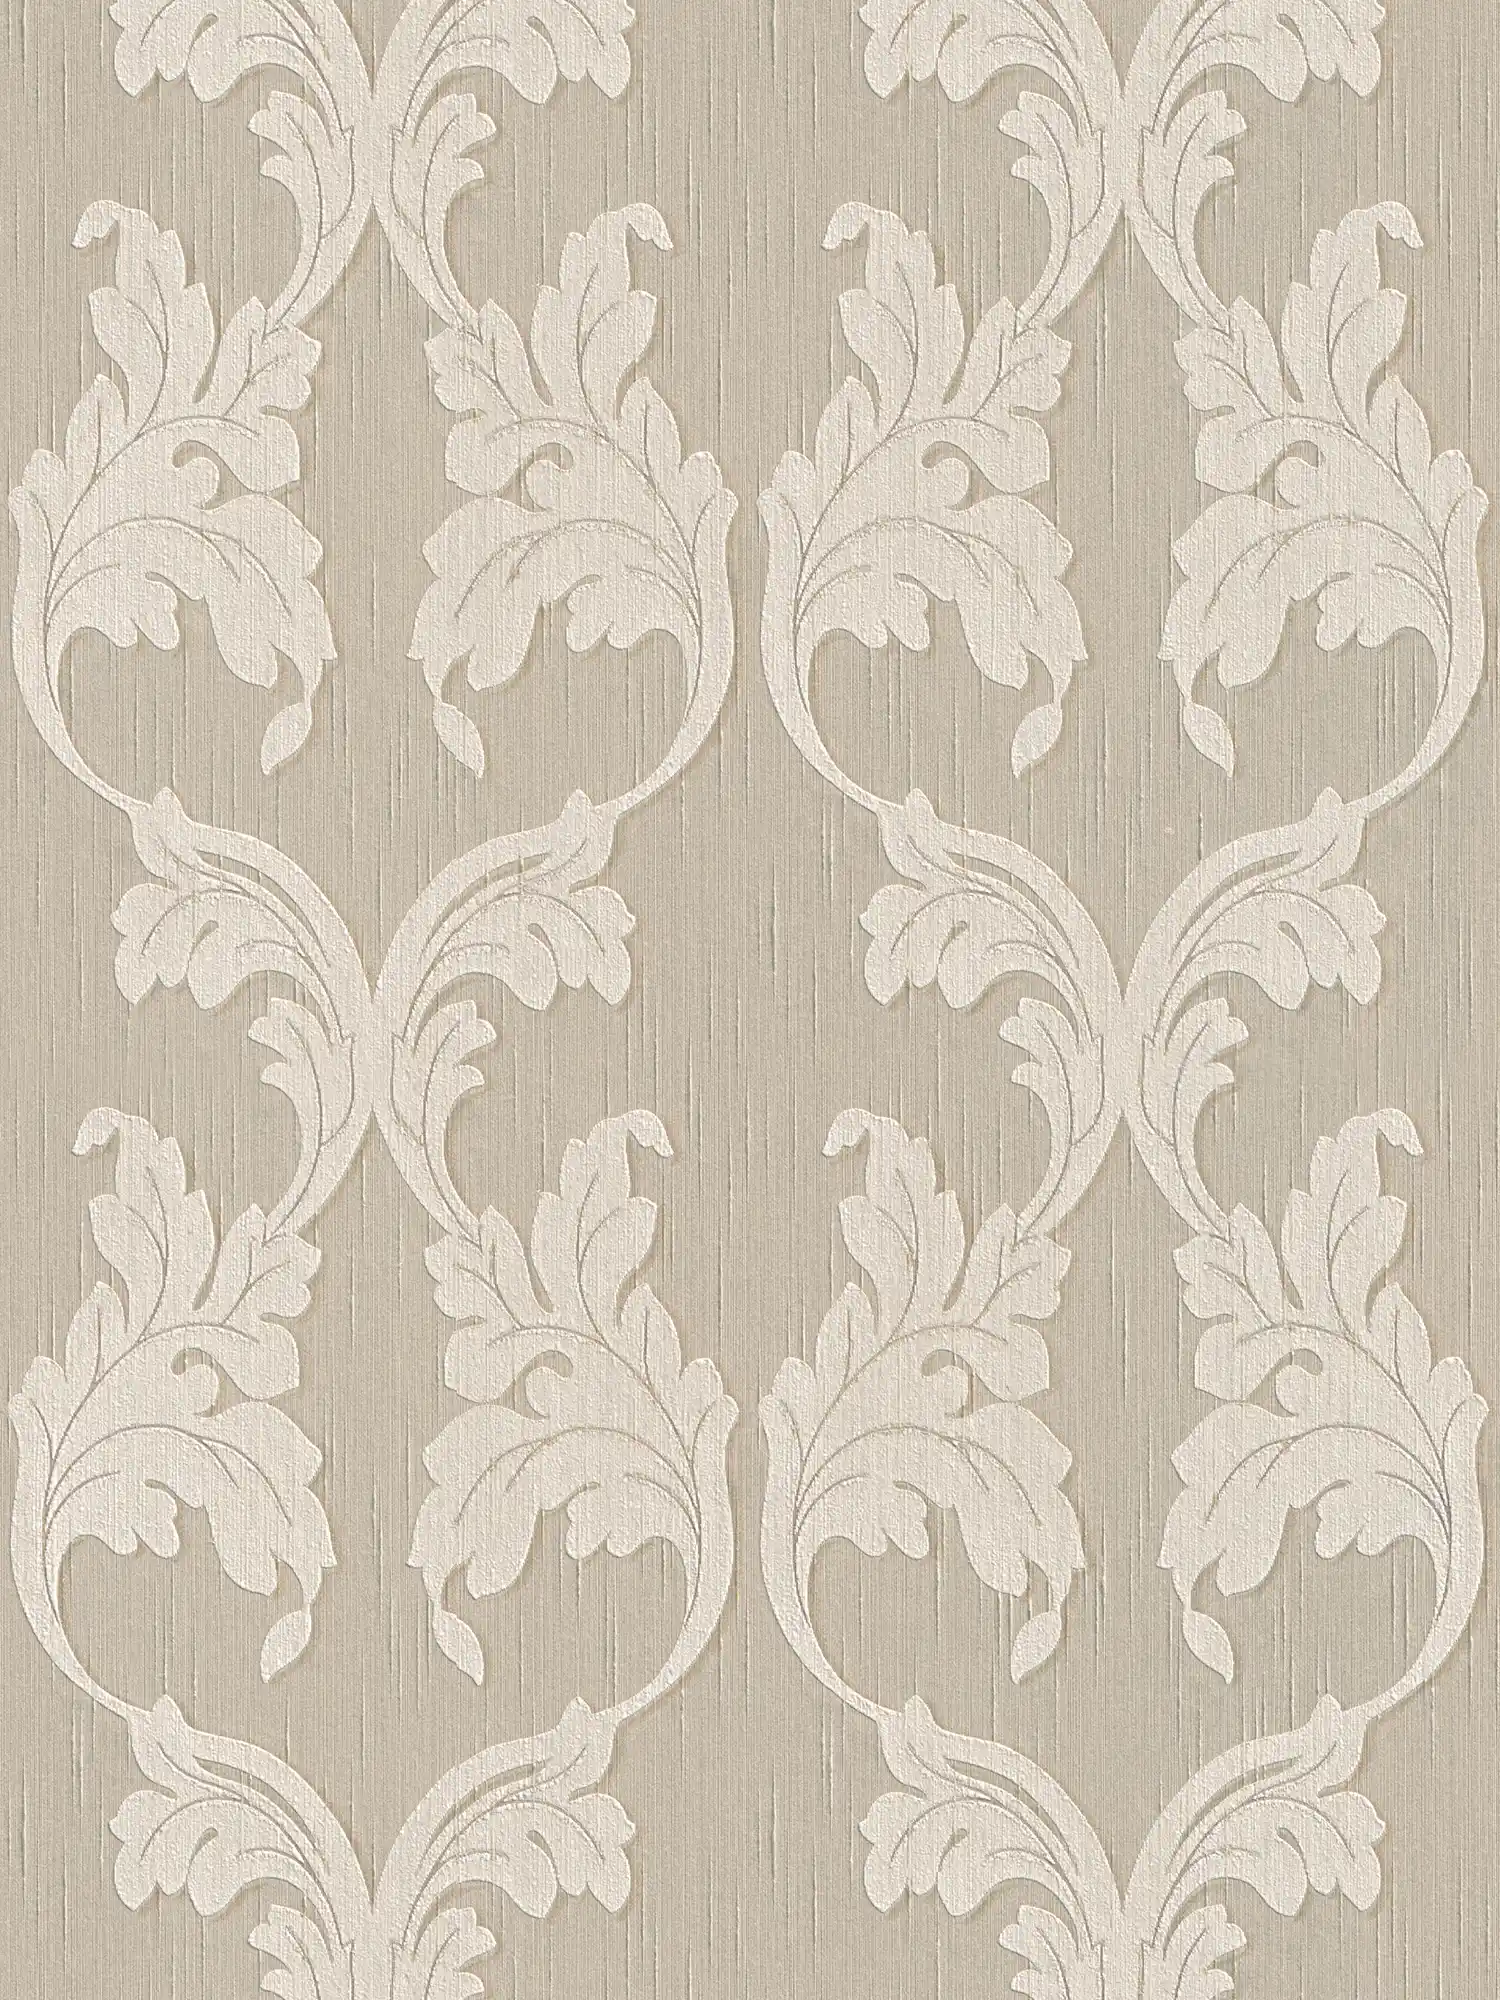 Premium textile wallpaper with ornament vines - beige, cream
